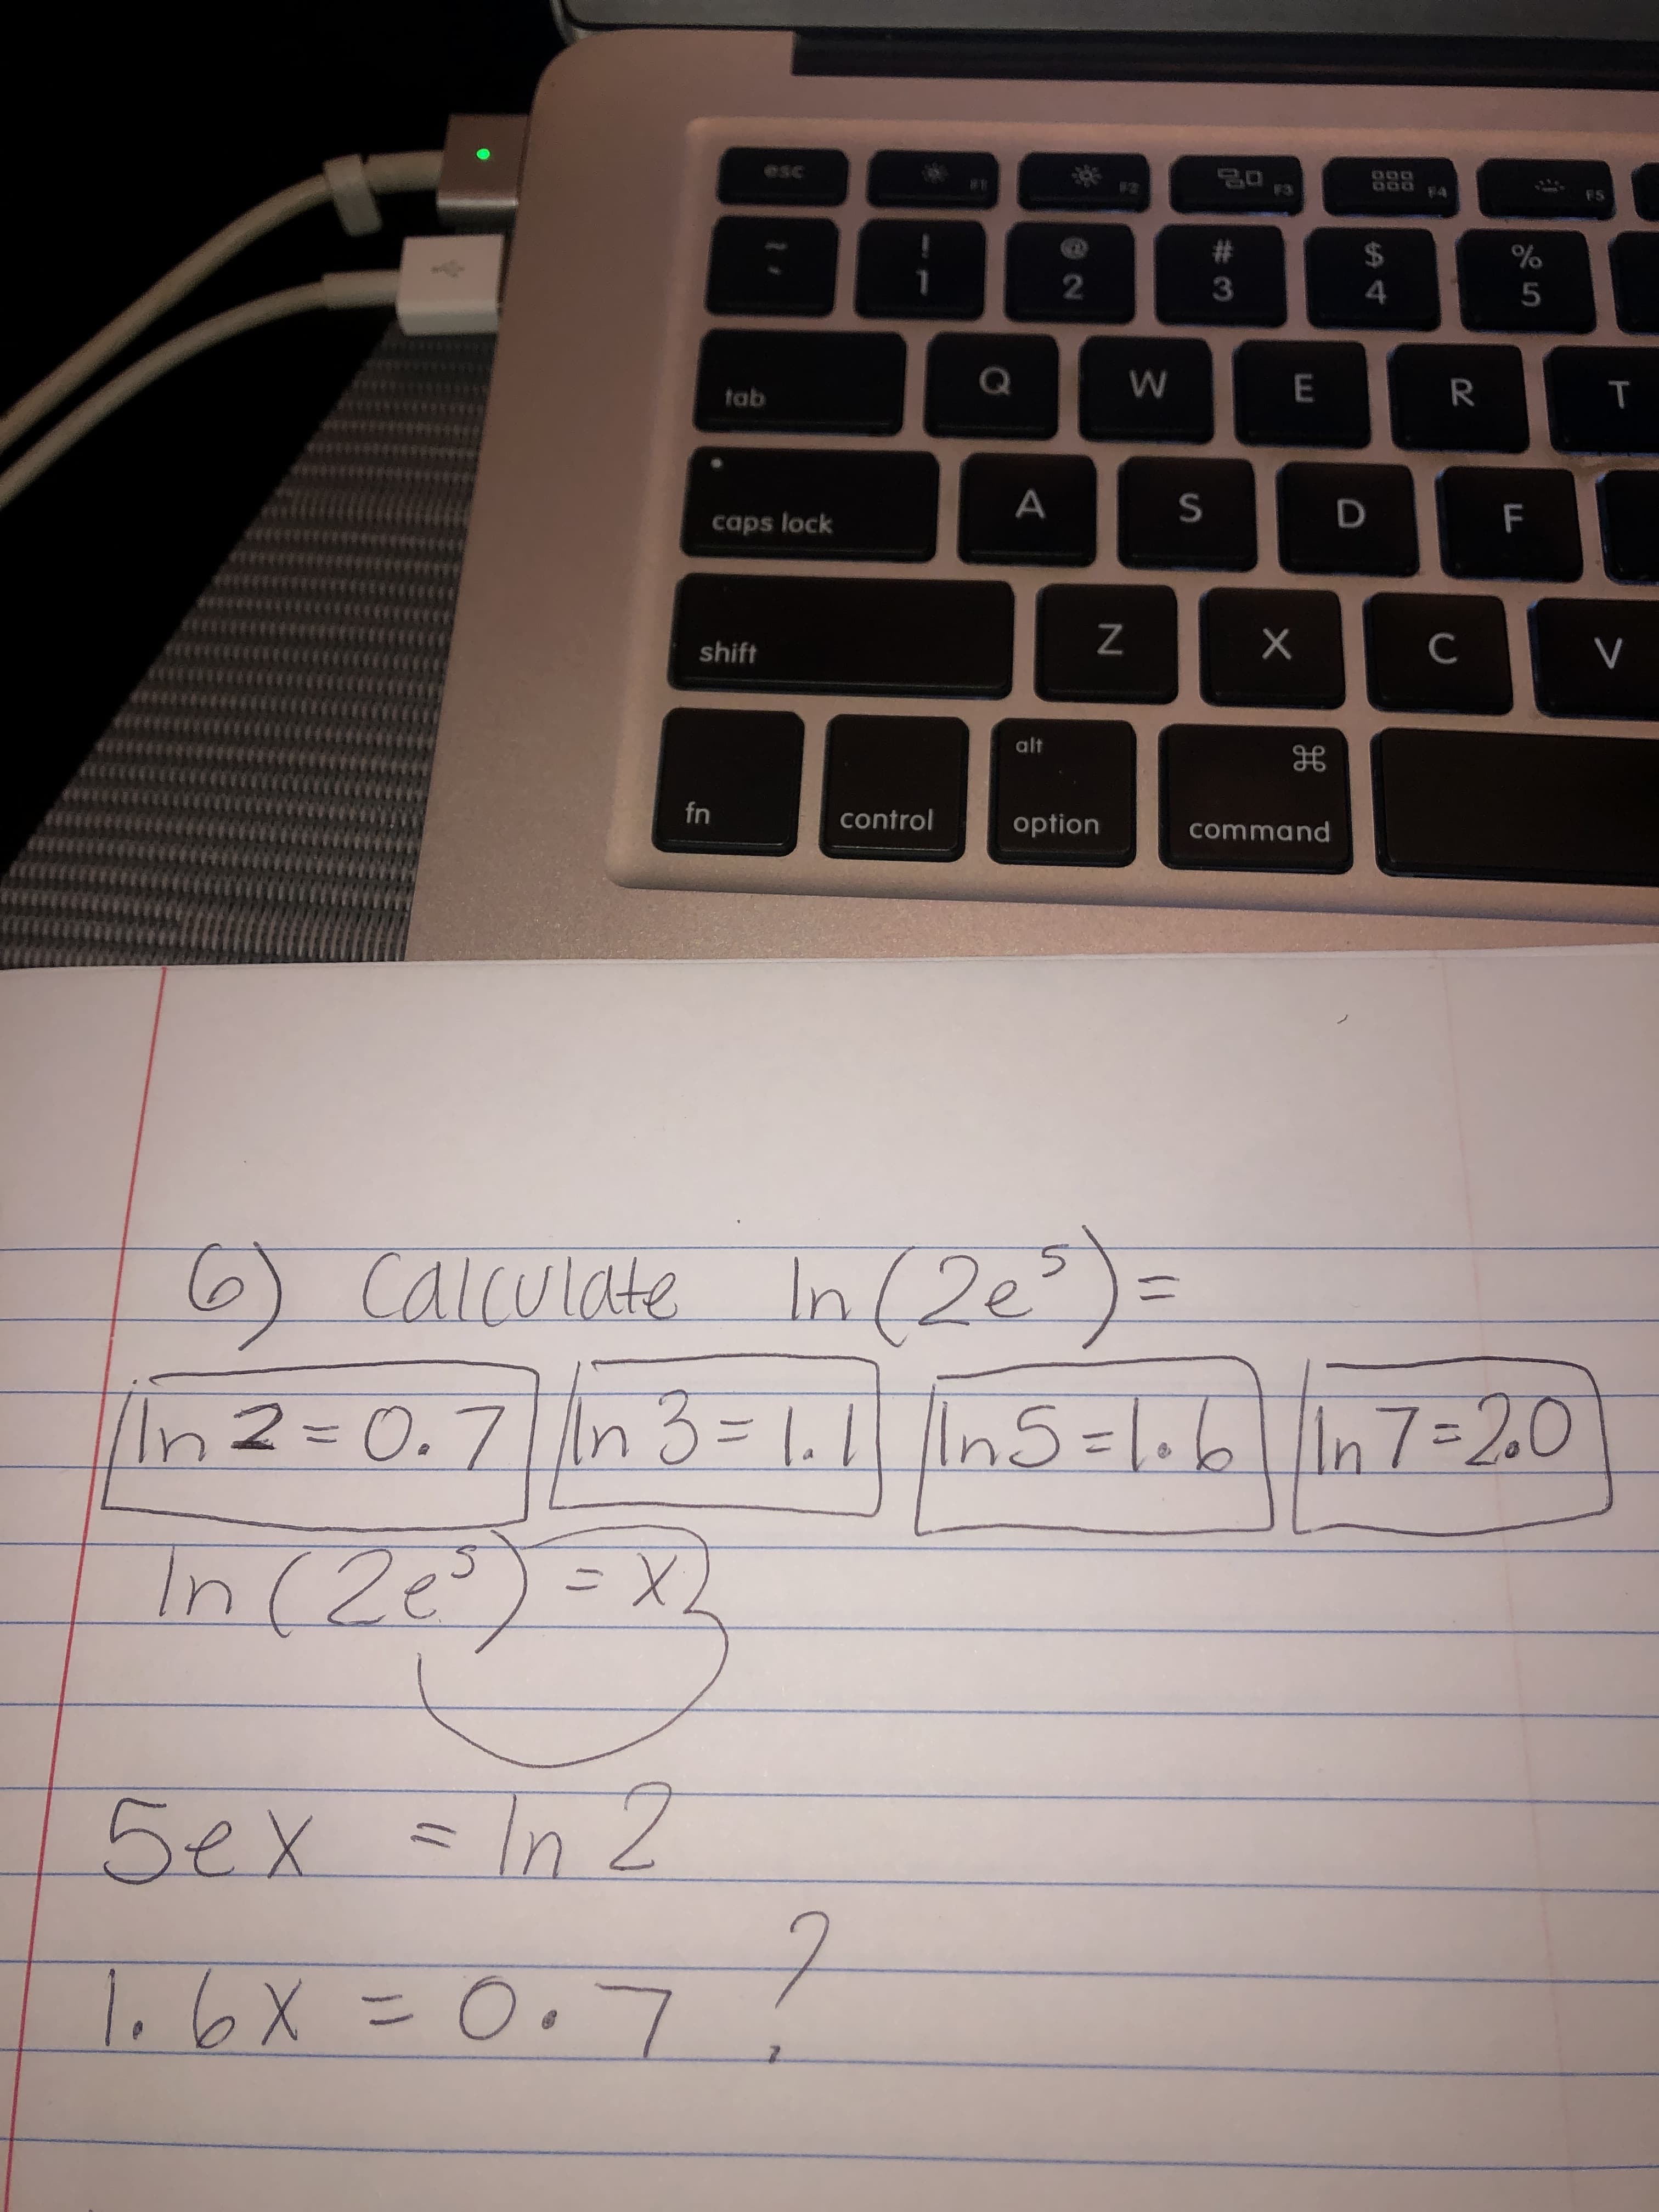 6) calculate In (2e°)=
11
2= 0.7n 3=
1. || ln5=1.6n7=20
%3D
n(2e°)=X
L
ex =In 2
